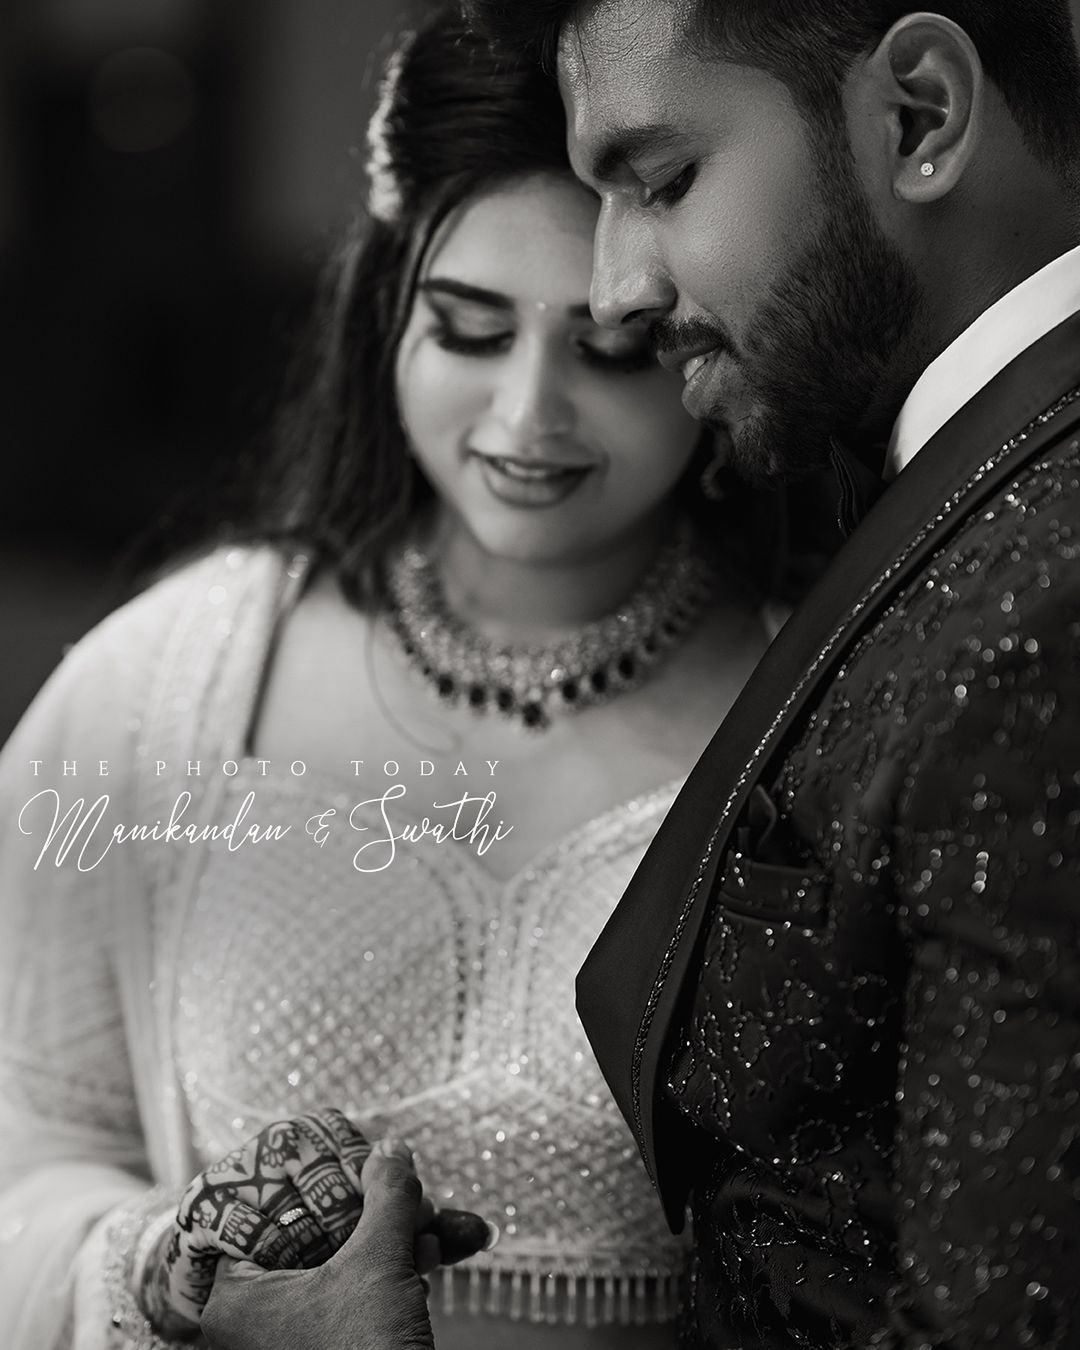 Swathi Kumaresh and Mani MDN's Enchanting Bridal Photoshoot by Phototoday Photography